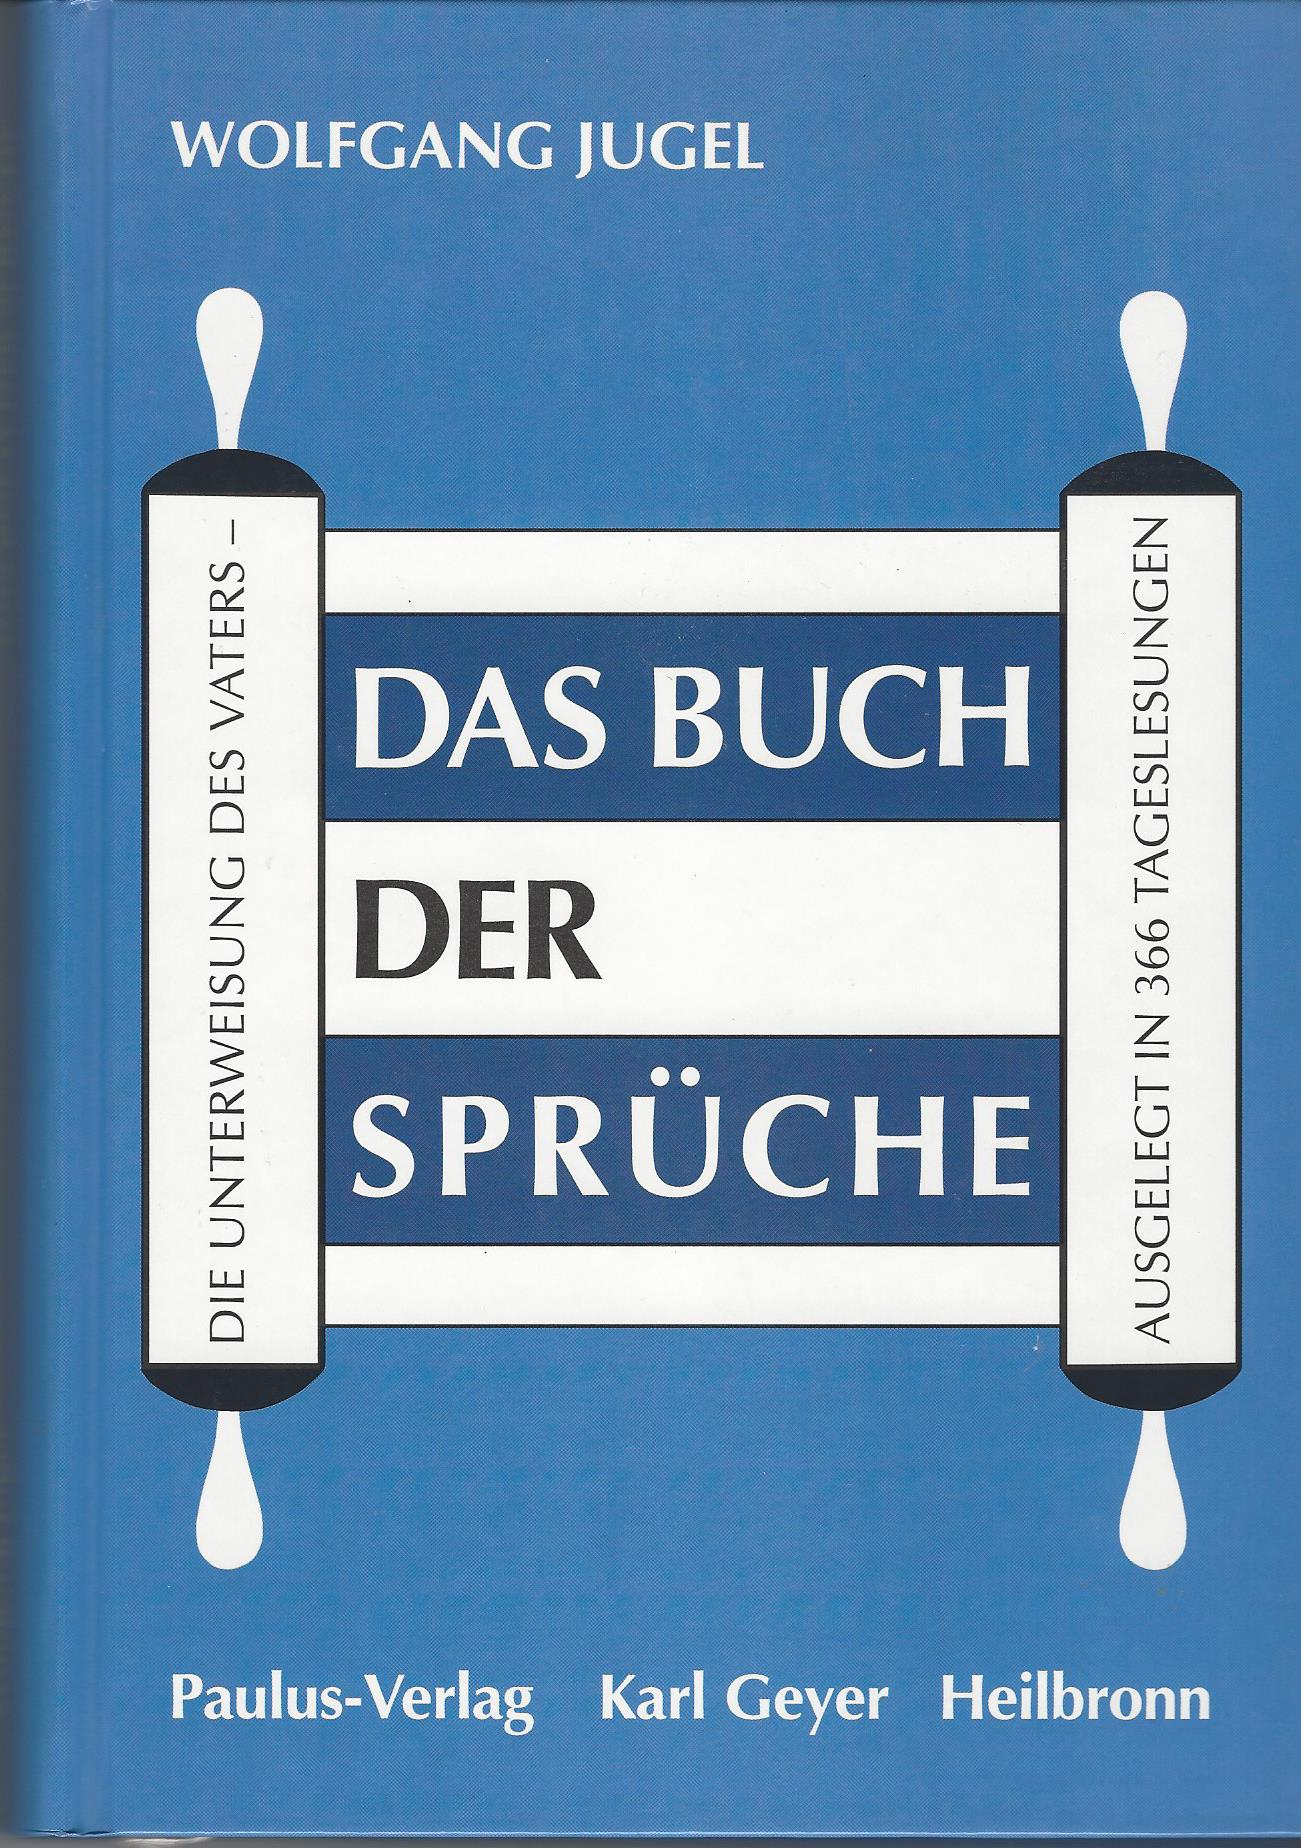 PDF - Das Buch der Sprüche 